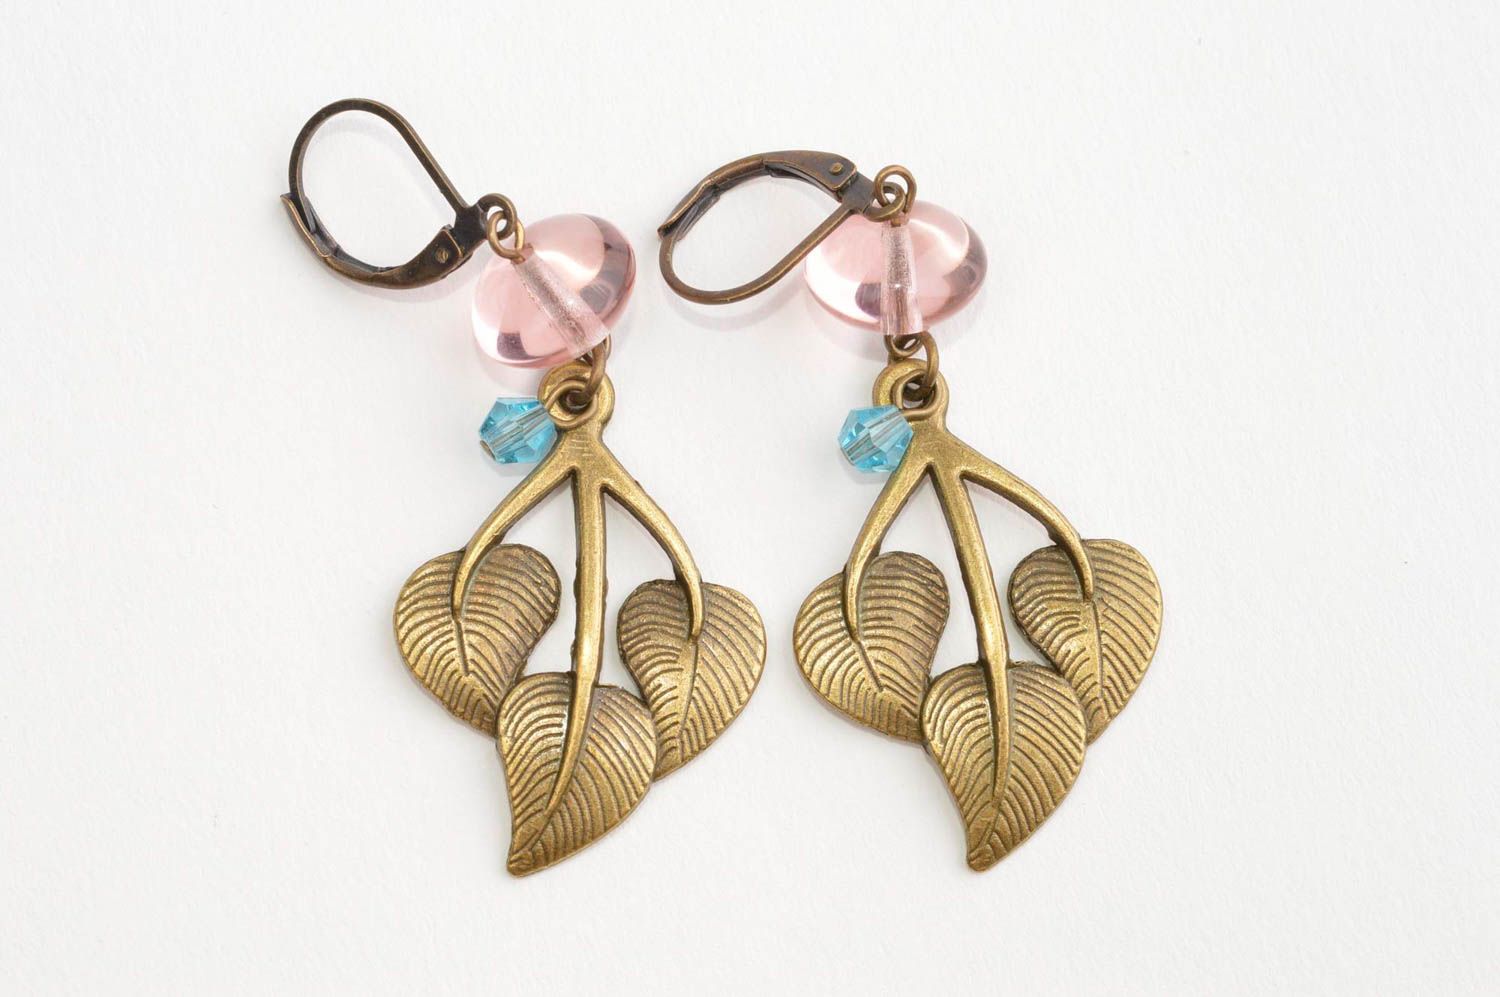 Handmade crystal earrings metal earrings with beads long earrings for girls photo 2